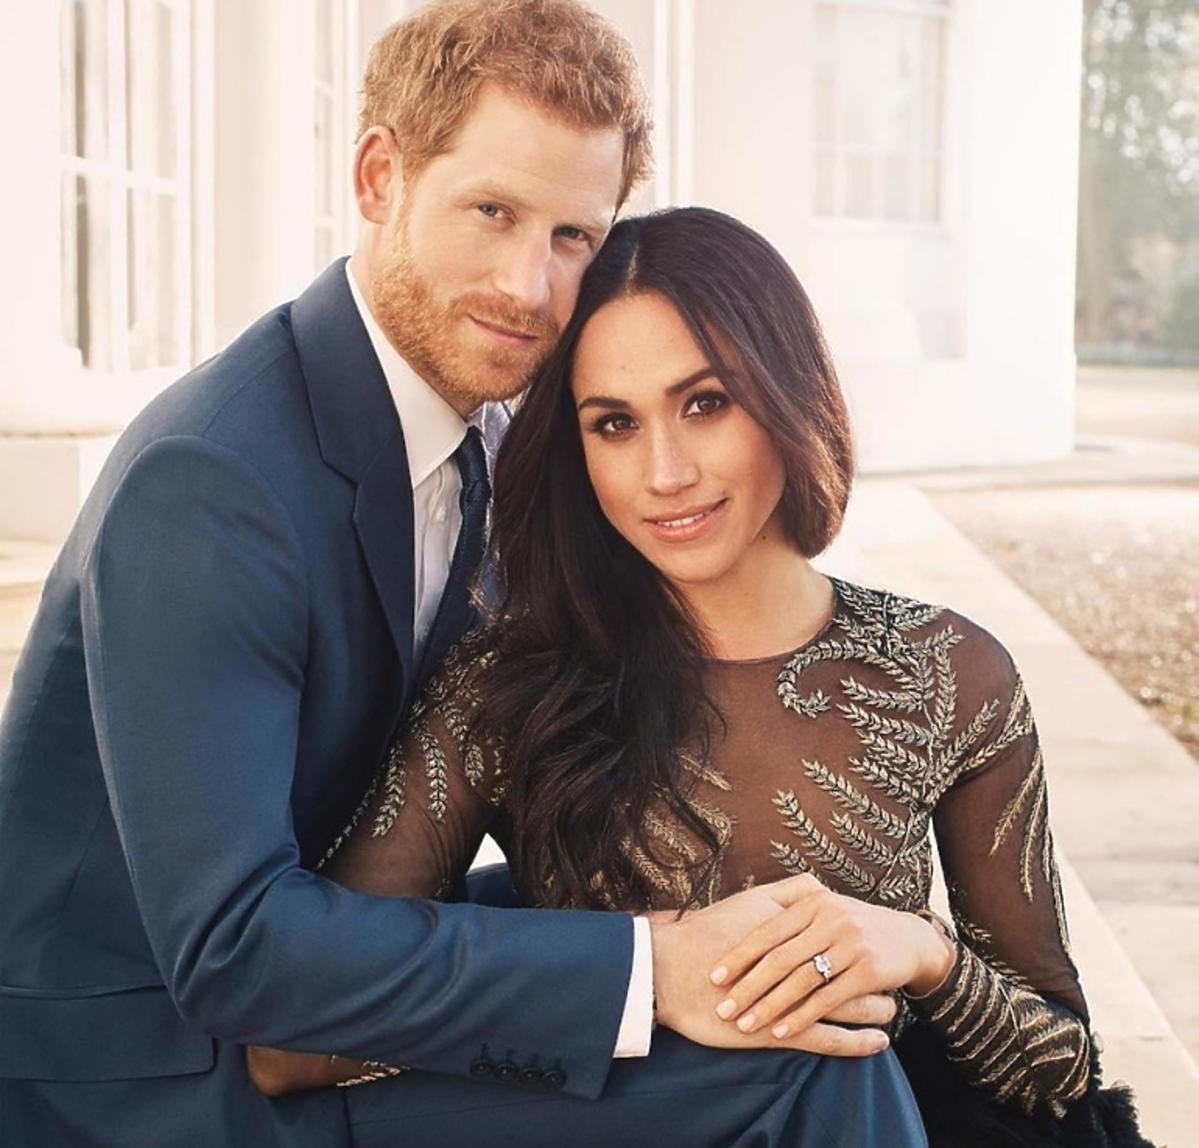 Zdjęcie Meghan Markle i księcia Harry'ego zrobione, aby uczcić ich zaręczyny